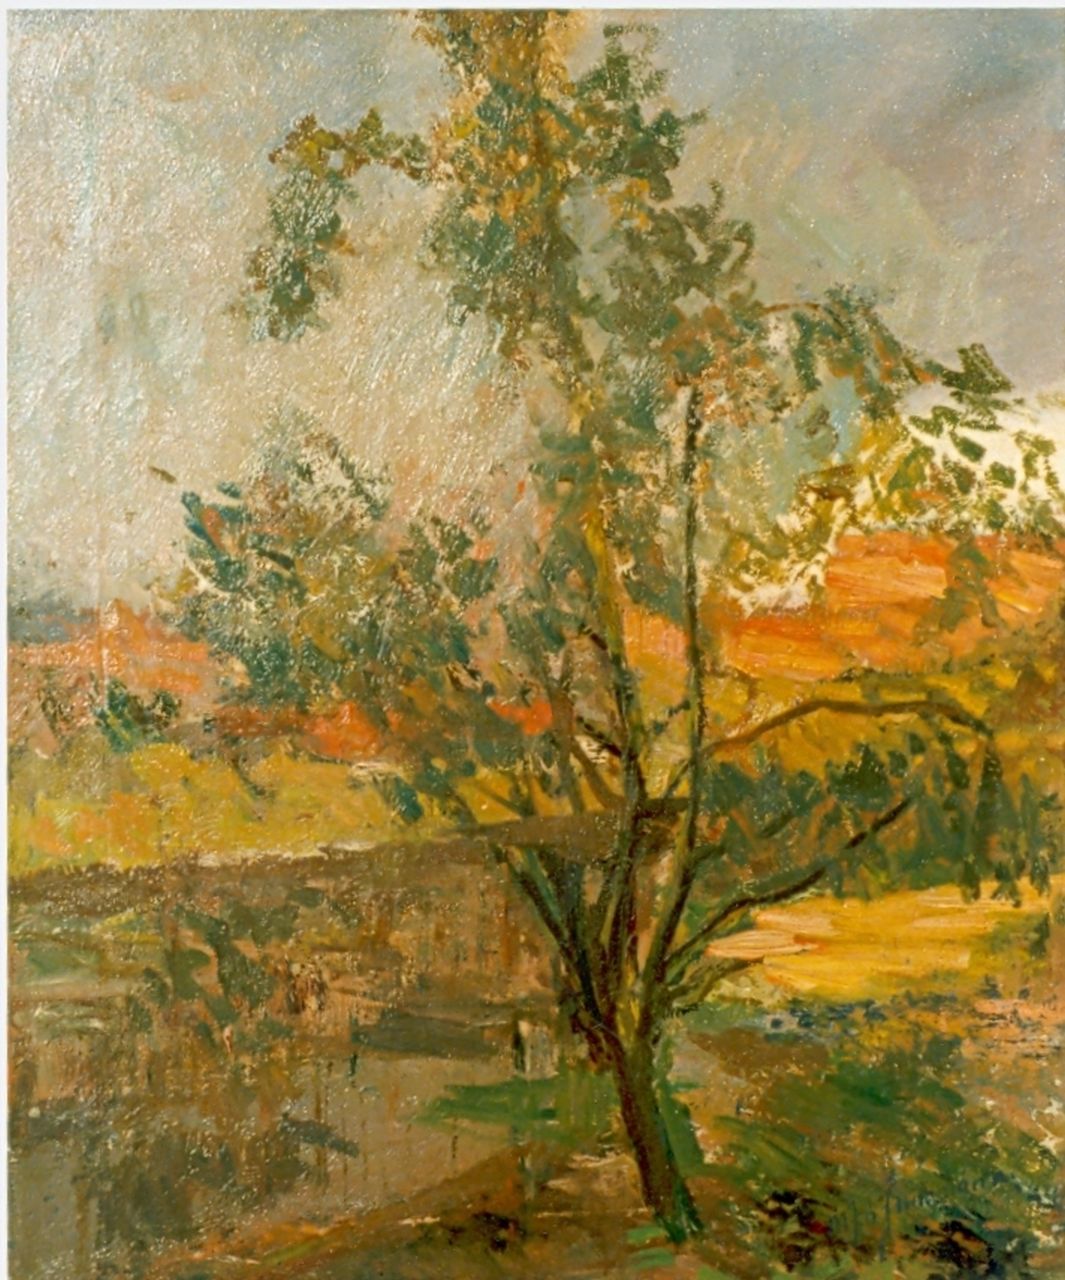 Jungmann M.J.B.  | 'Maarten' Johannes Balthasar Jungmann, Impressie van een boom aan het water, olieverf op doek 57,3 x 48,0 cm, gesigneerd rechtsonder